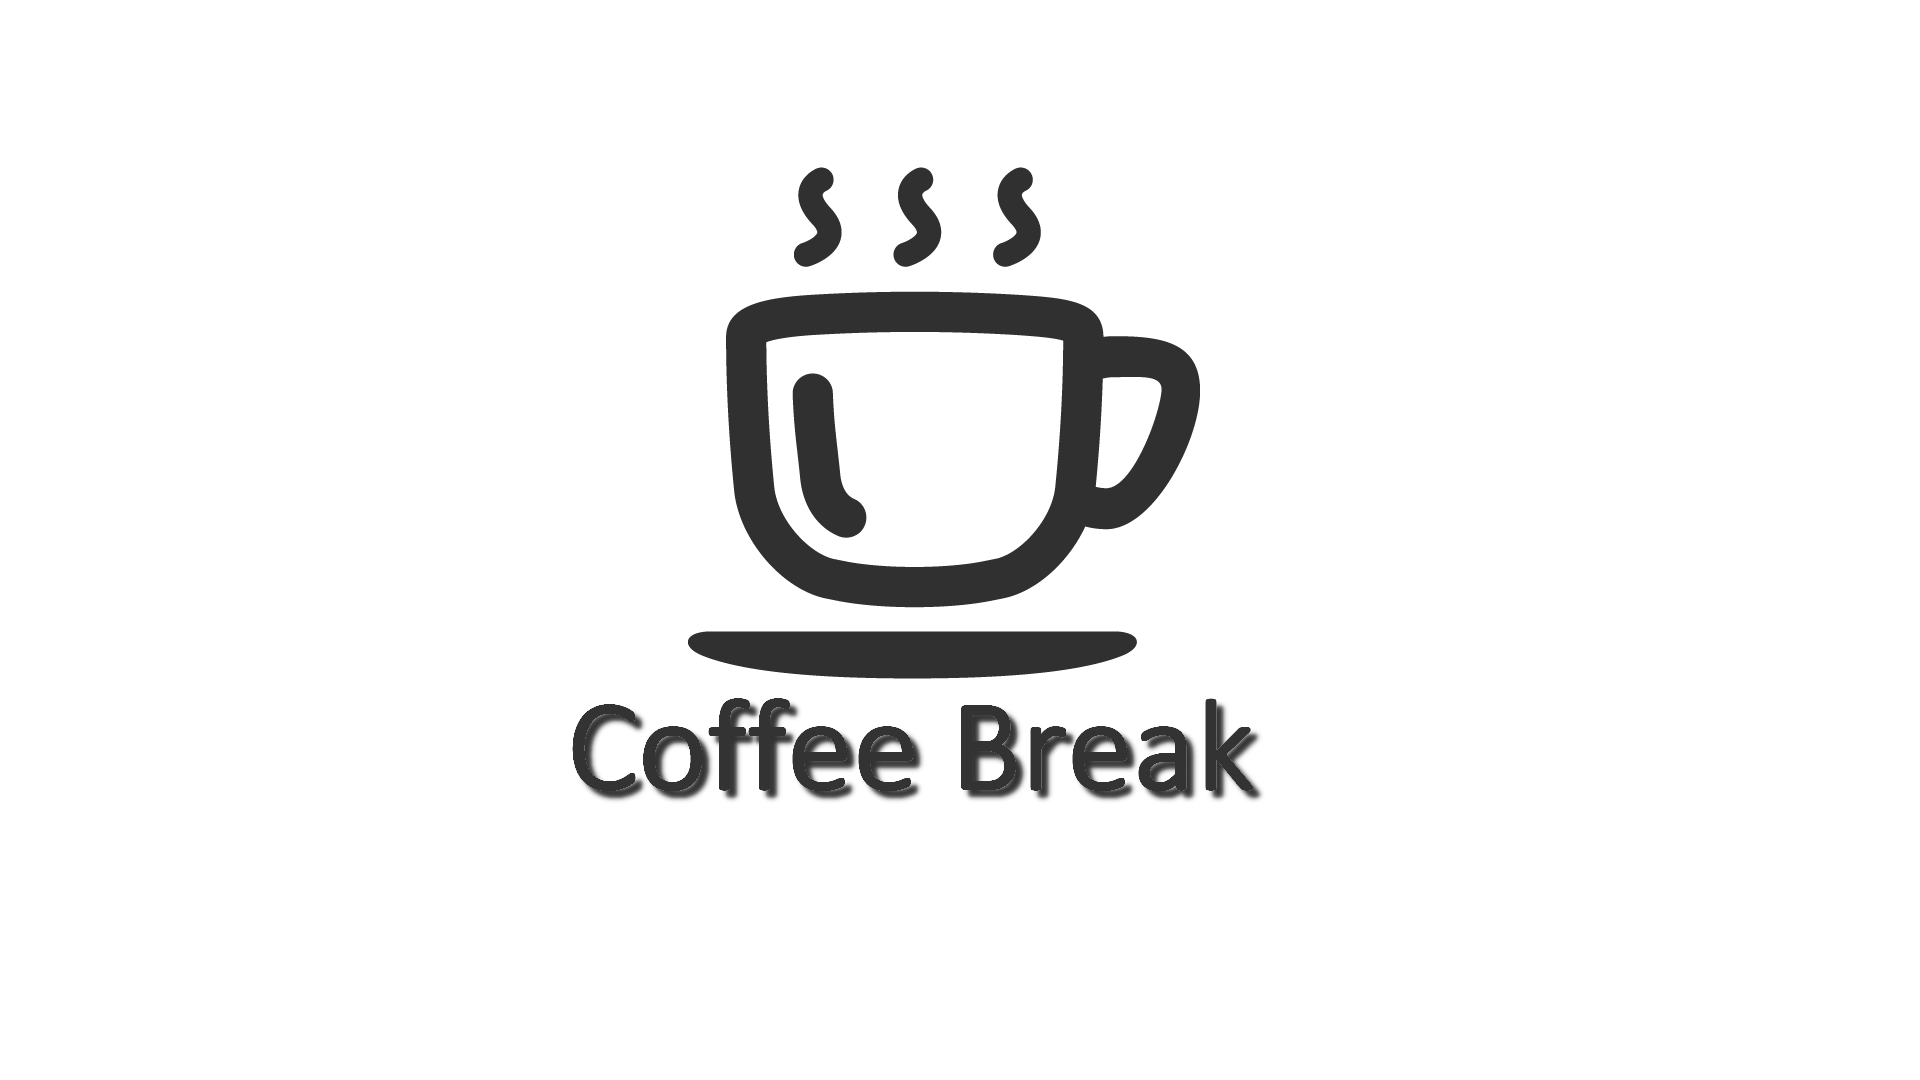 Steam Workshop Coffee Break Server Side